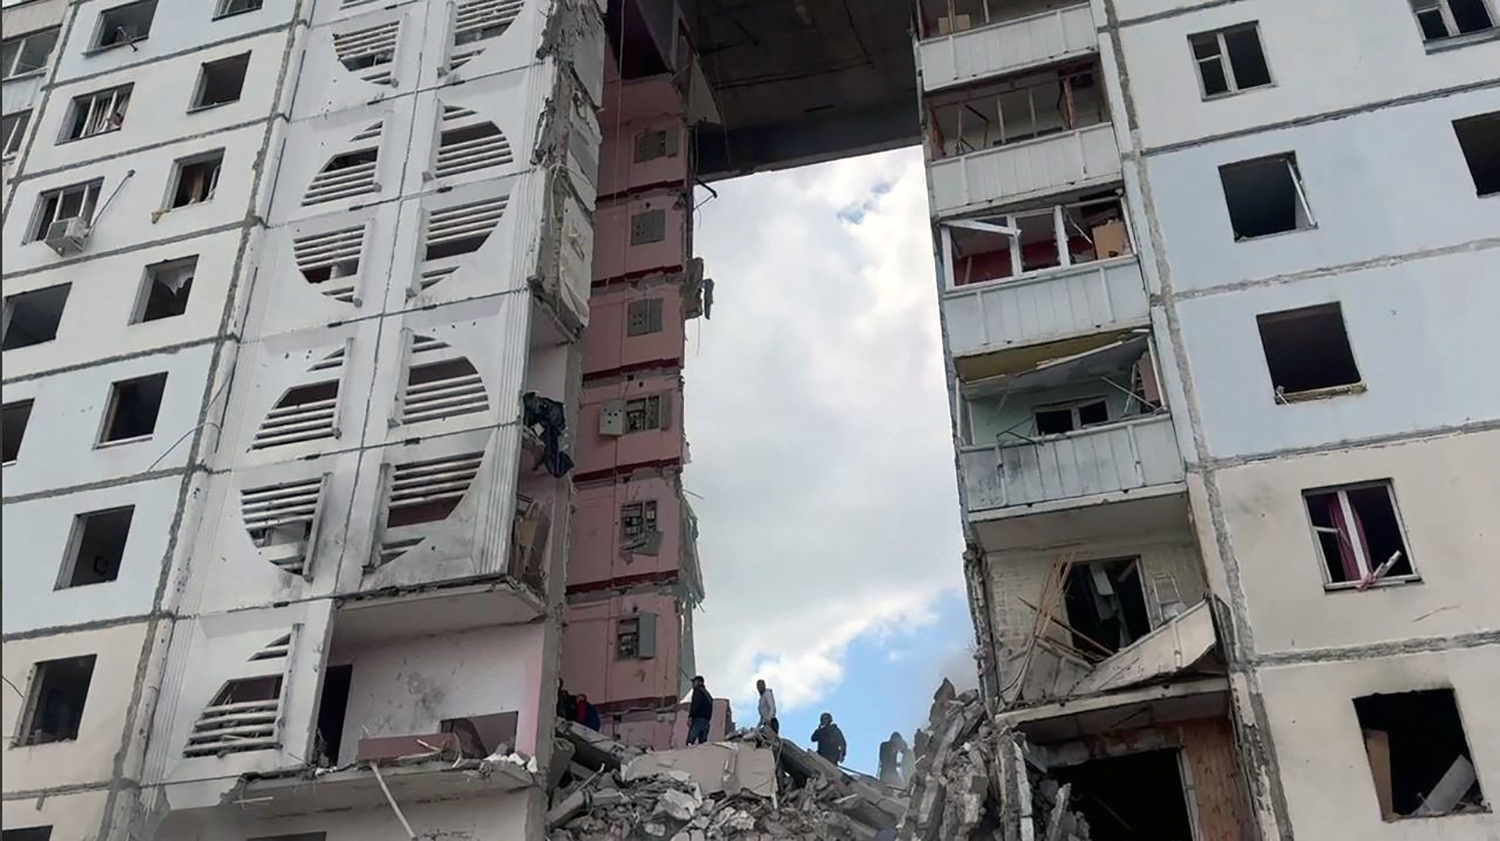 Többen is meghaltak, amikor egy rakétatámadásban beomlott egy orosz lakóház több emelete